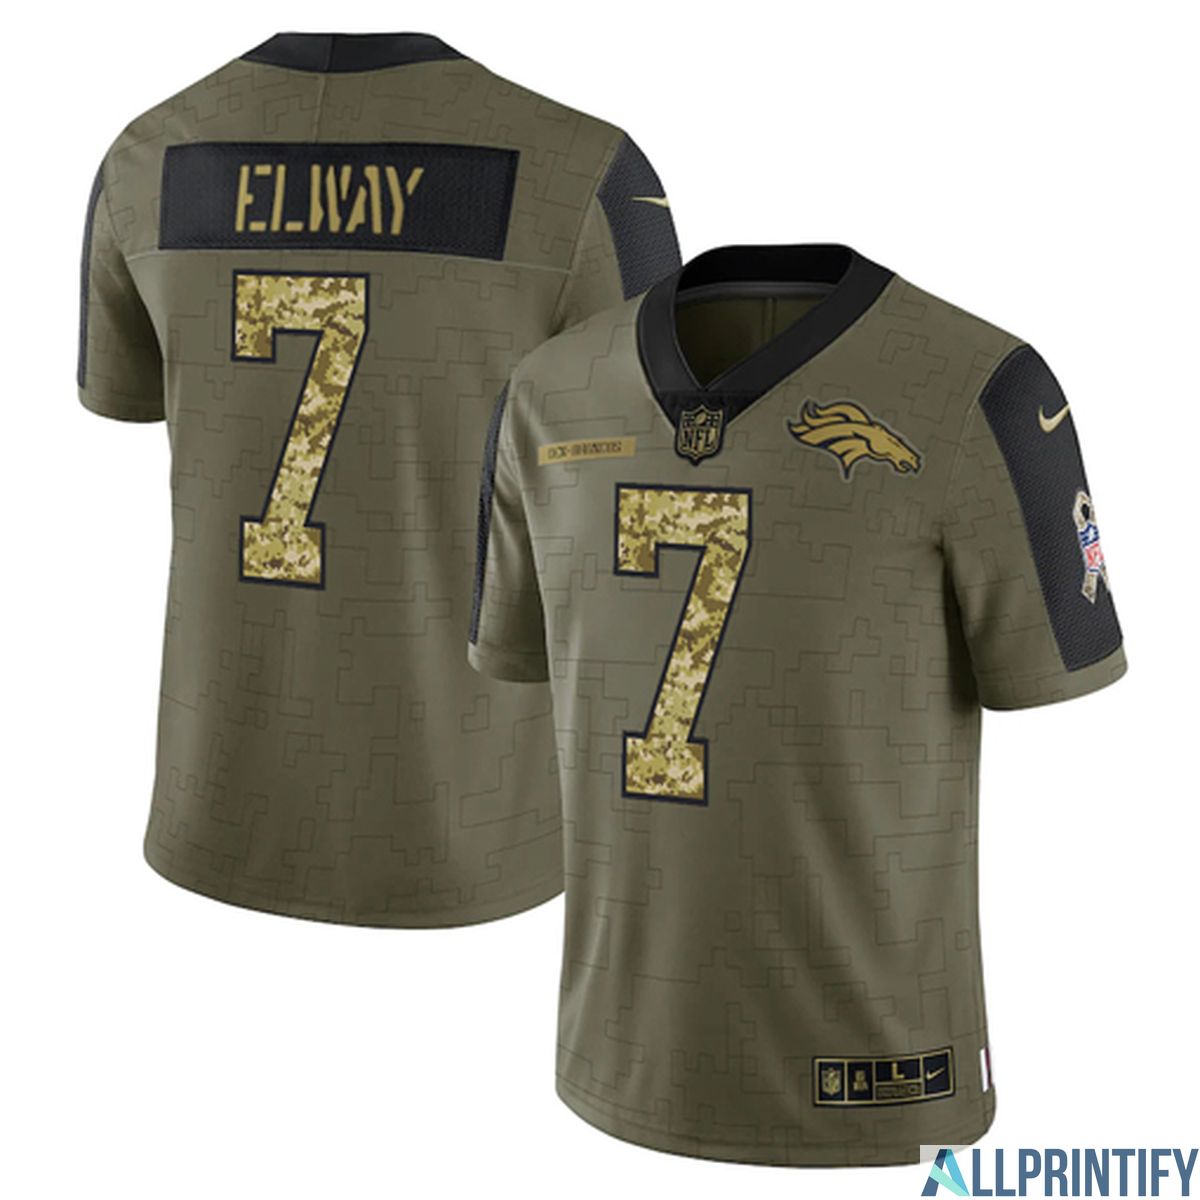 Elway Denver Broncos 7 Olive Vapor Limited Player Jersey